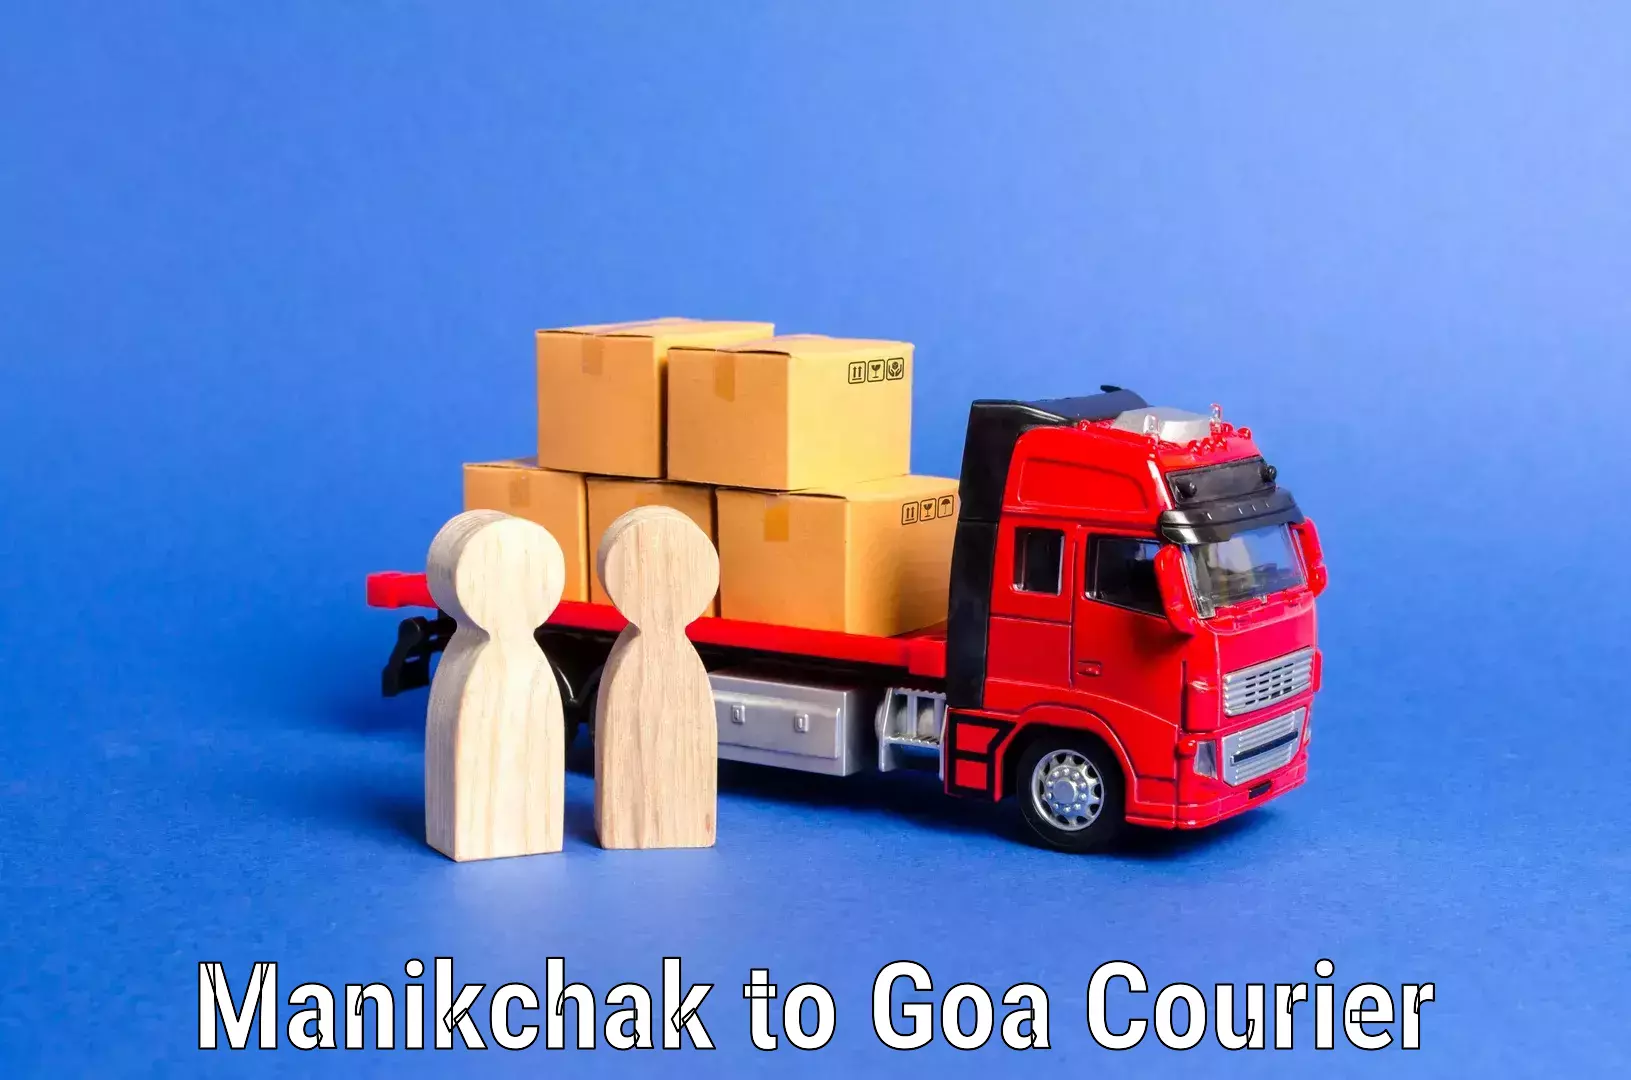 Personalized moving service Manikchak to Goa